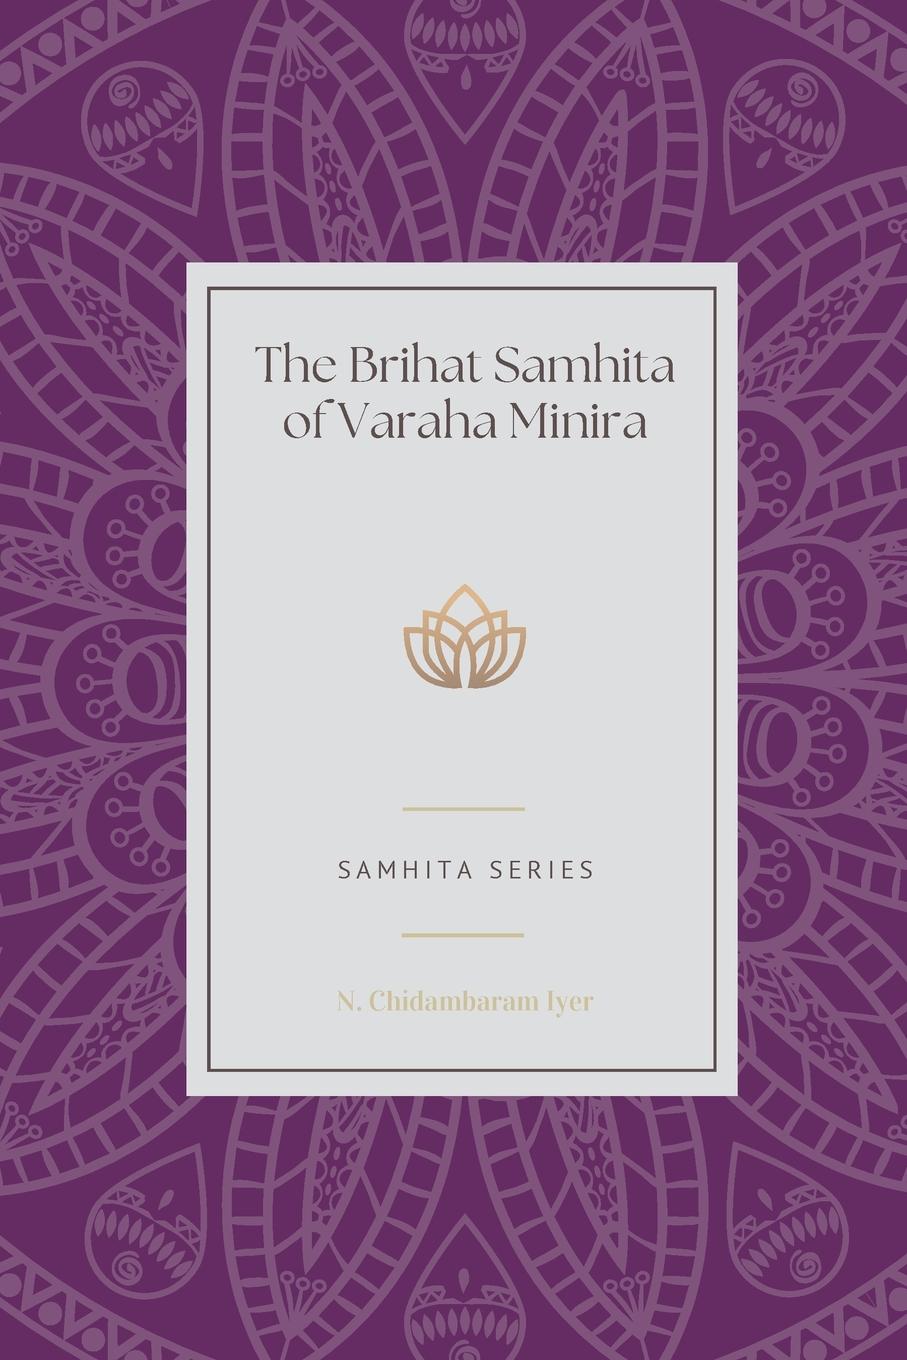 Carte The Brihat Samhita of Varaha Minira 